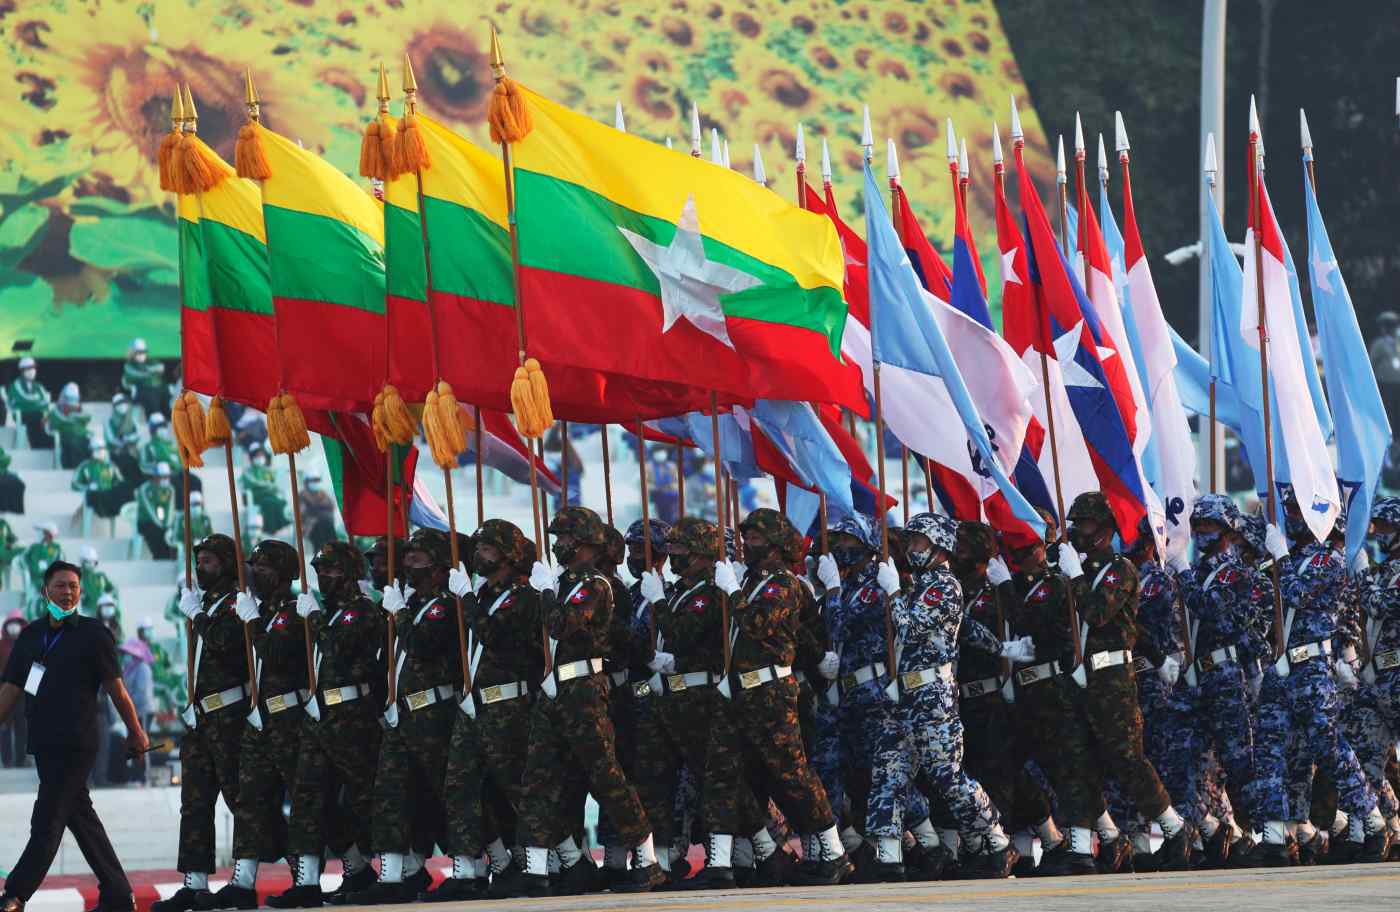 Quốc khánh Myanmar: Chúc mừng Quốc khánh Myanmar! Ngày này năm ngoái nước Myanmar đã có được sự độc lập dứt khoát. Kỷ niệm này là dịp để tôn vinh sự tiến bộ và phát triển của đất nước cùng những nỗ lực của nhân dân Myanmar.